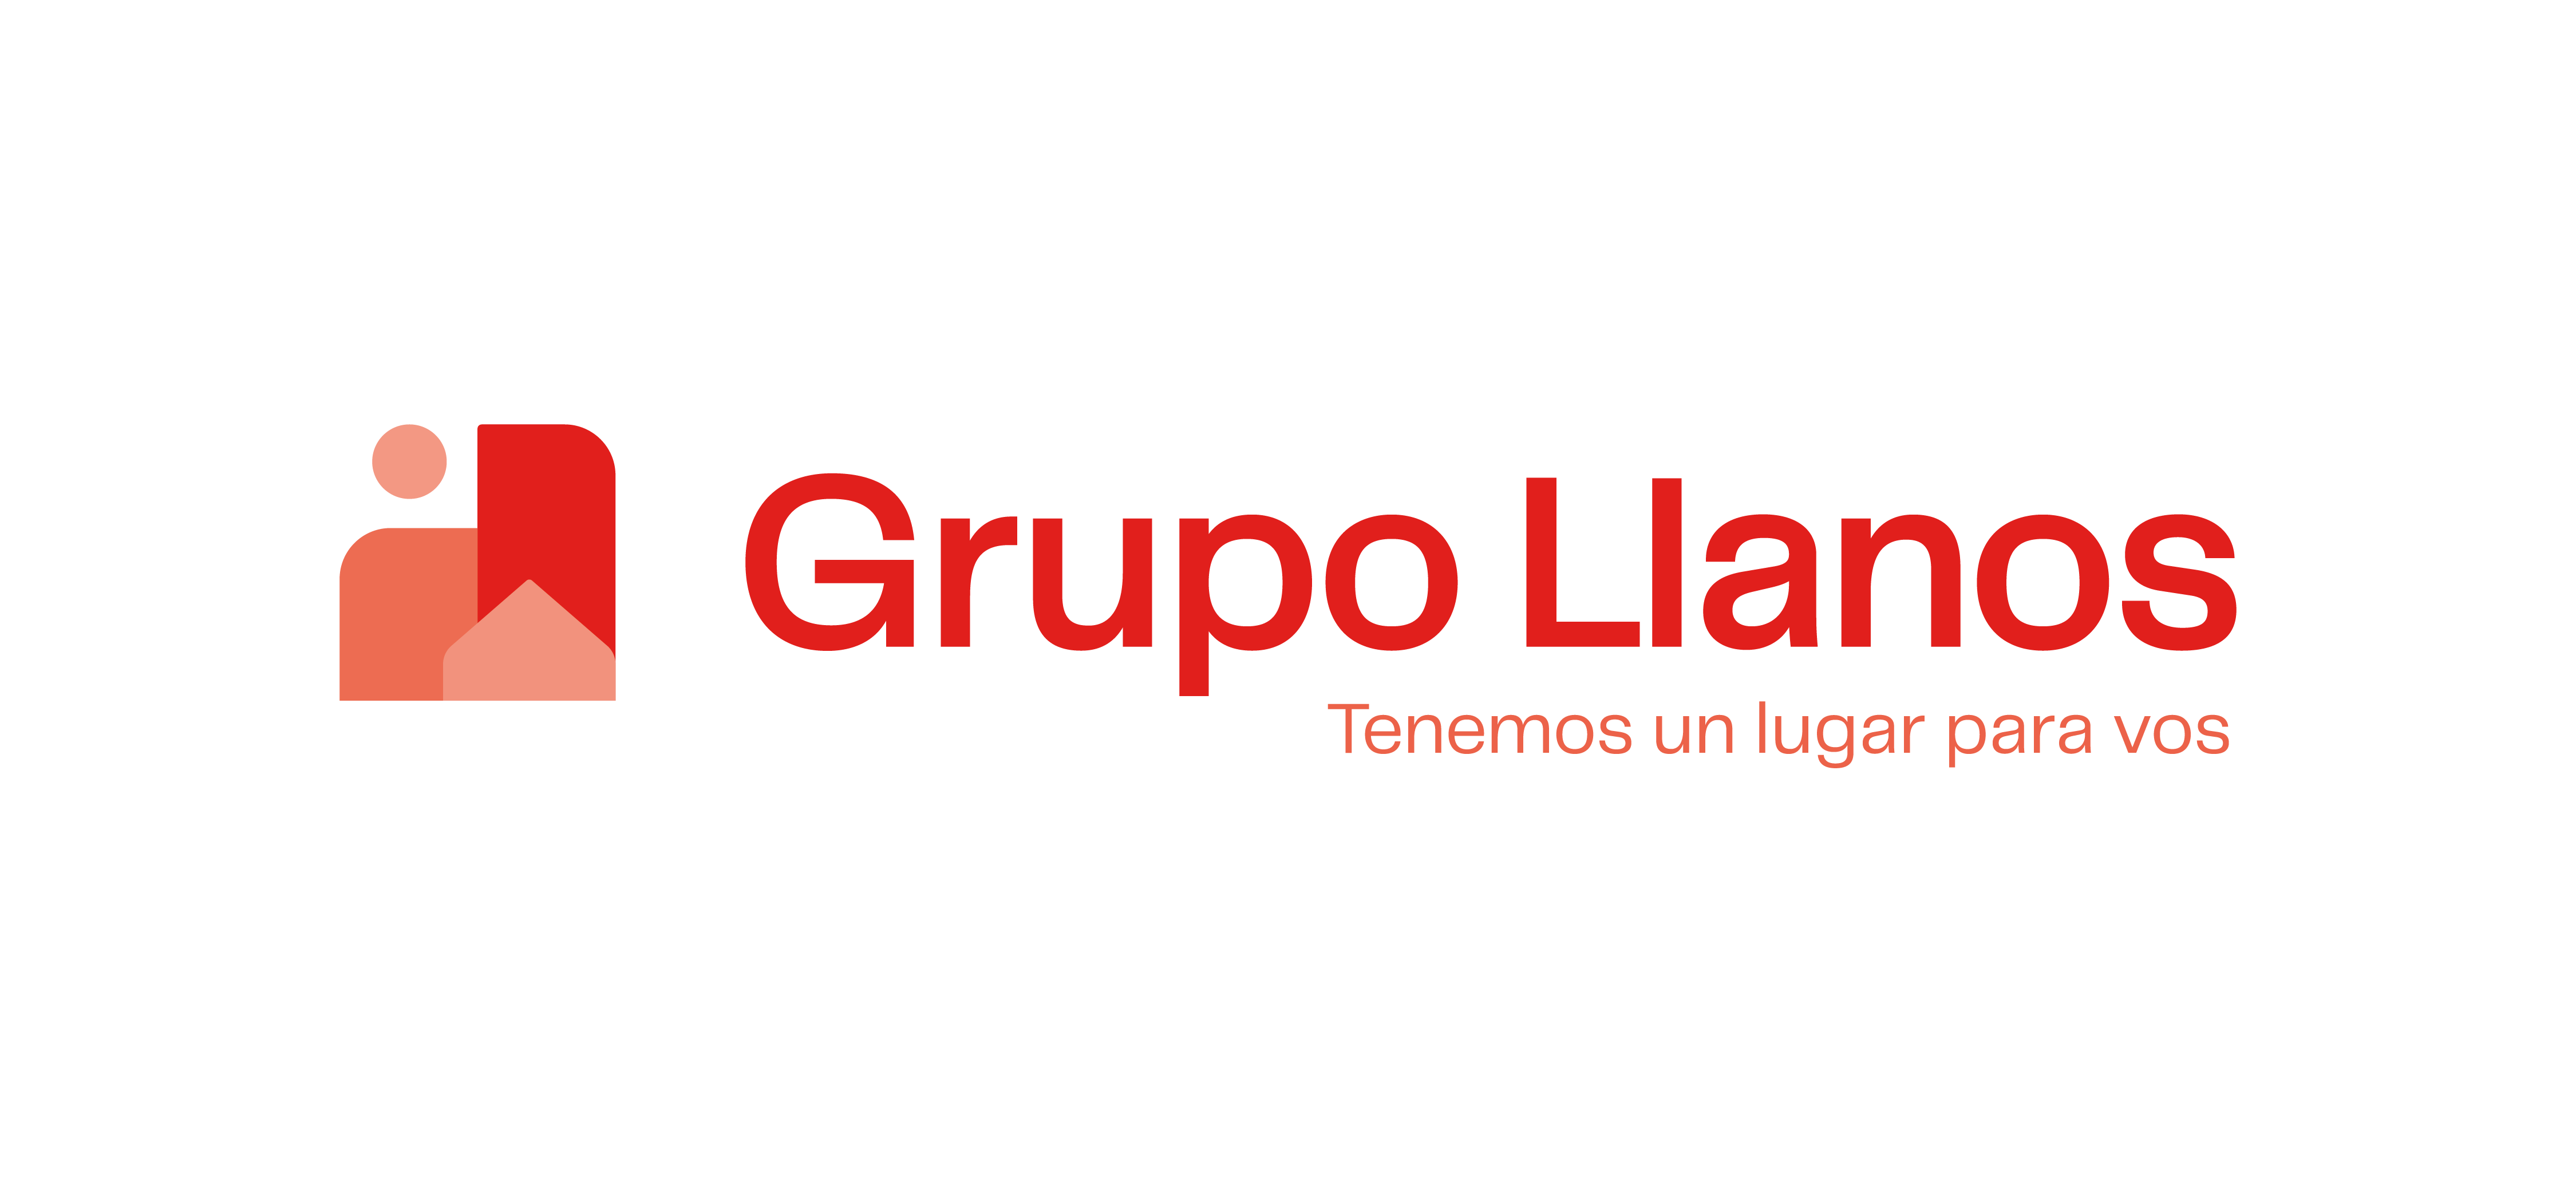 Grupo Llanos